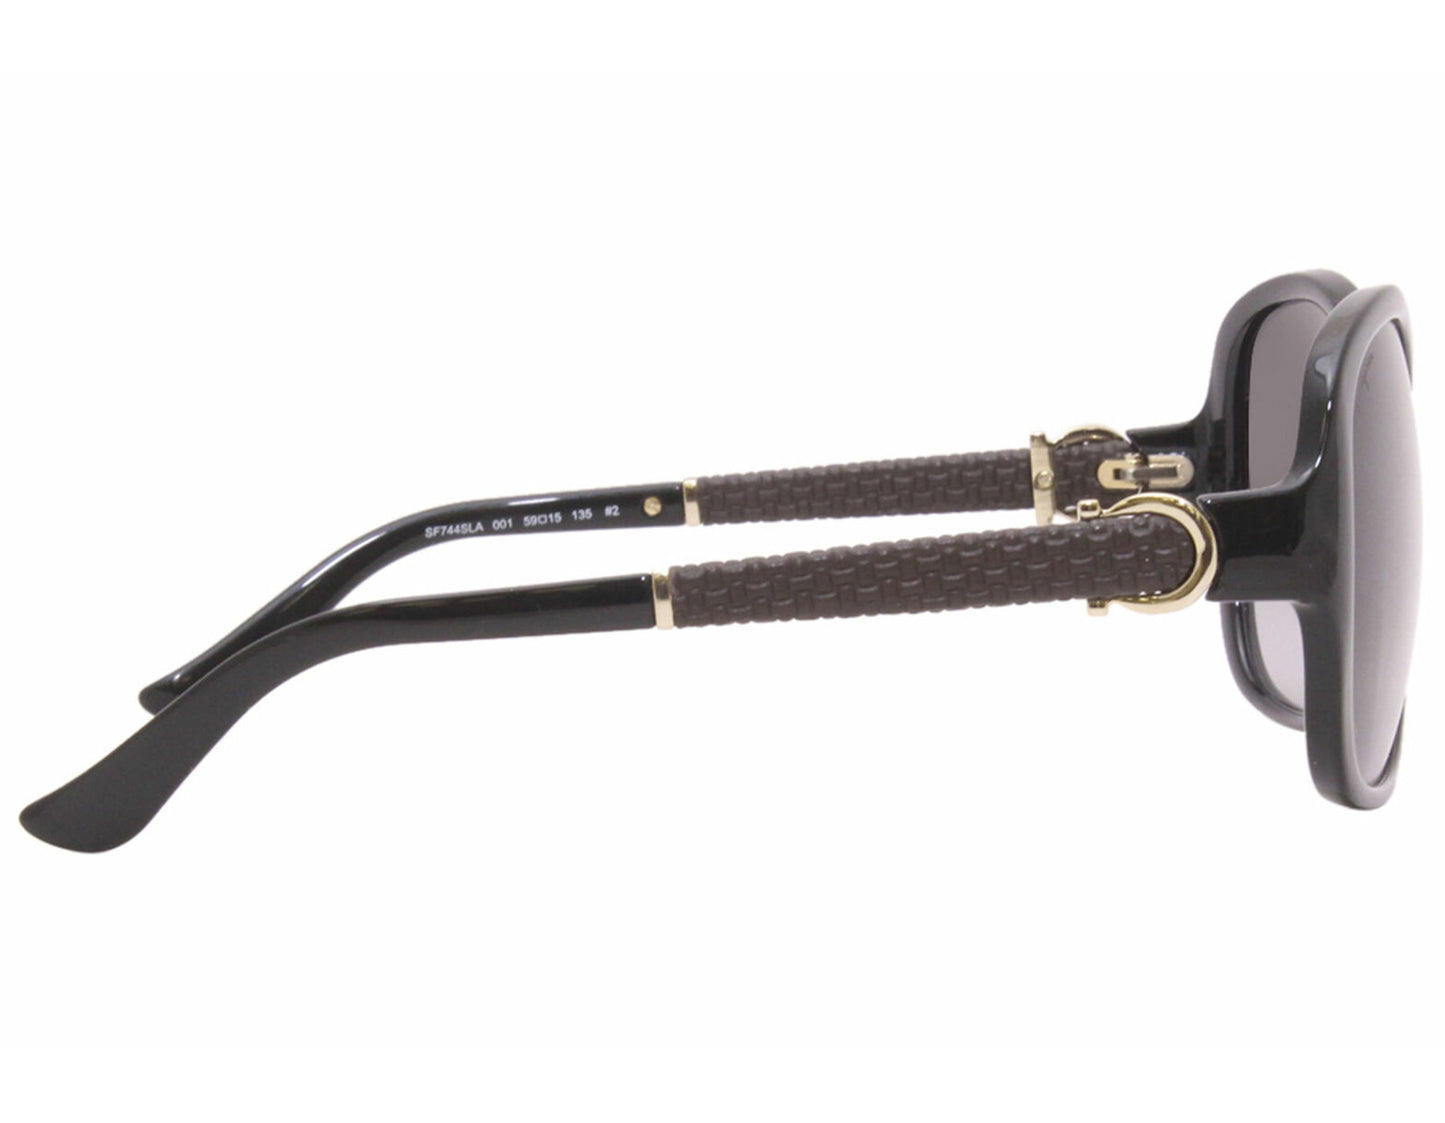 Salvatore Ferragamo SF744SLA-001-59 59mm New Sunglasses